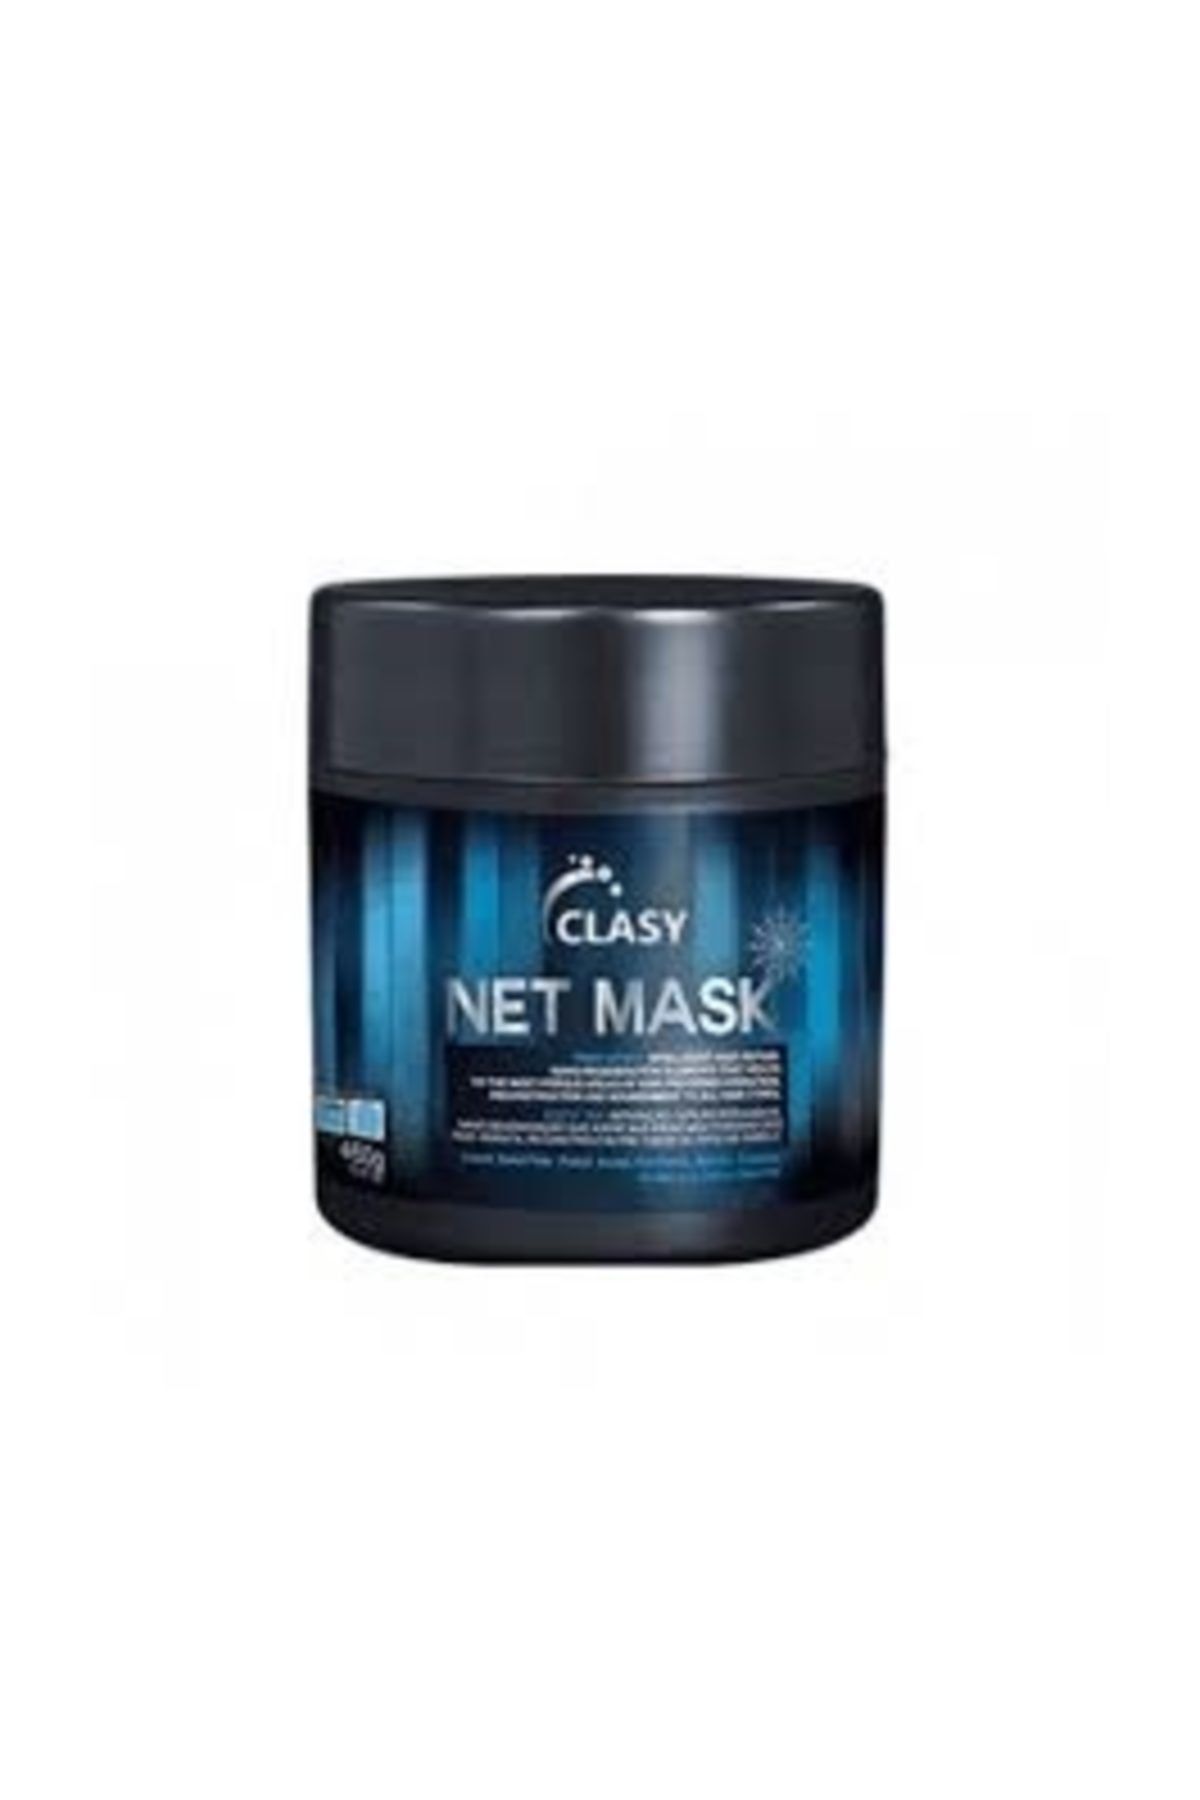 Clasy Net Mask - Saç Maskesi - Saç Bakımı - 1 Adet